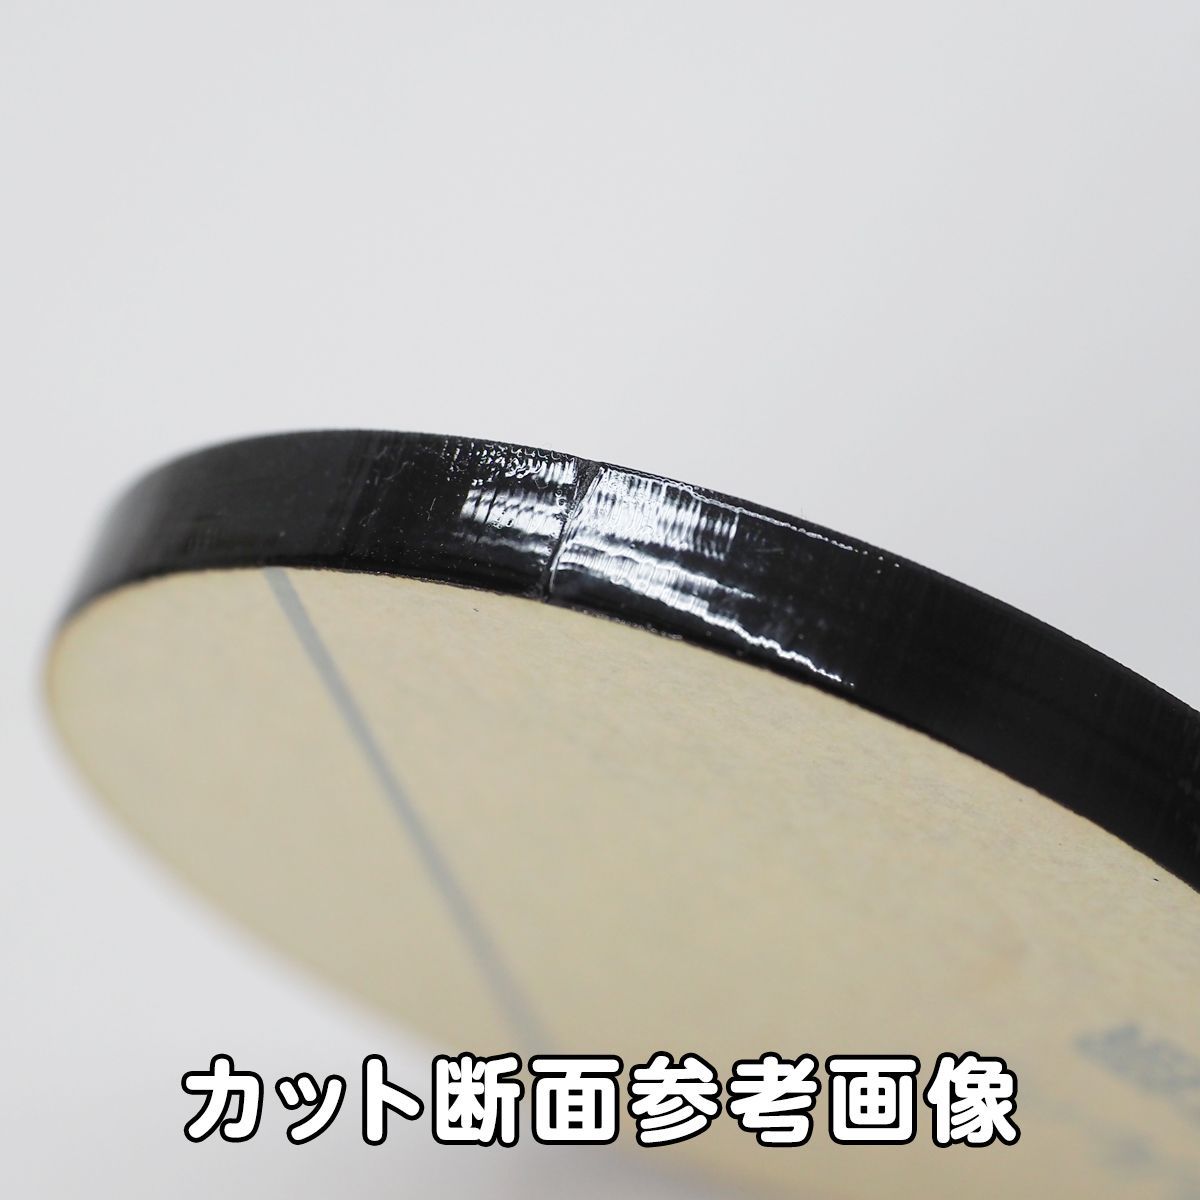 黒 アクリル 5mm厚 円形 直径8cm 4個セット - メルカリ